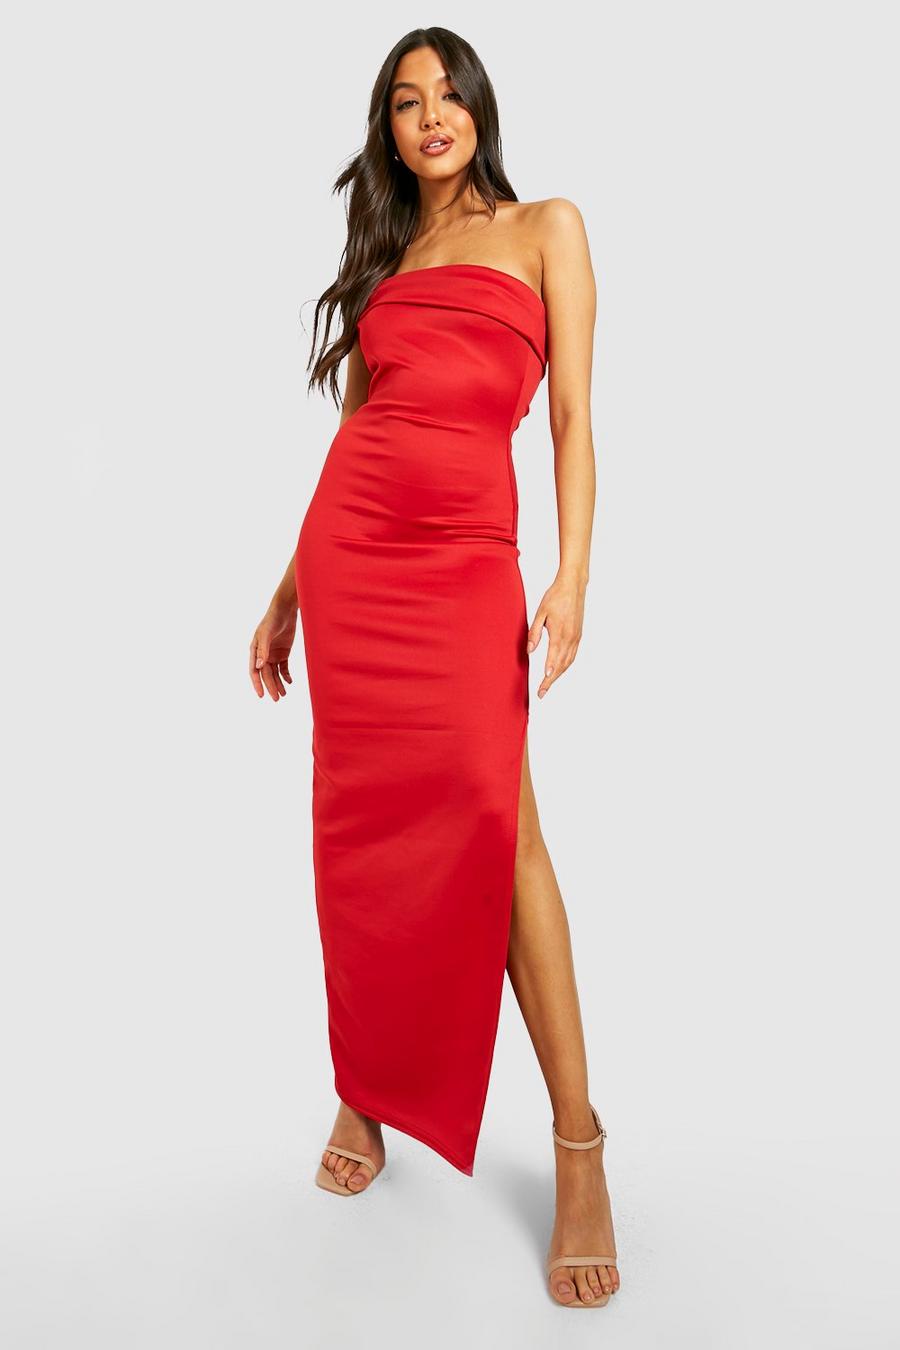 Red One Shoulder Slim Fit Maxi Dress